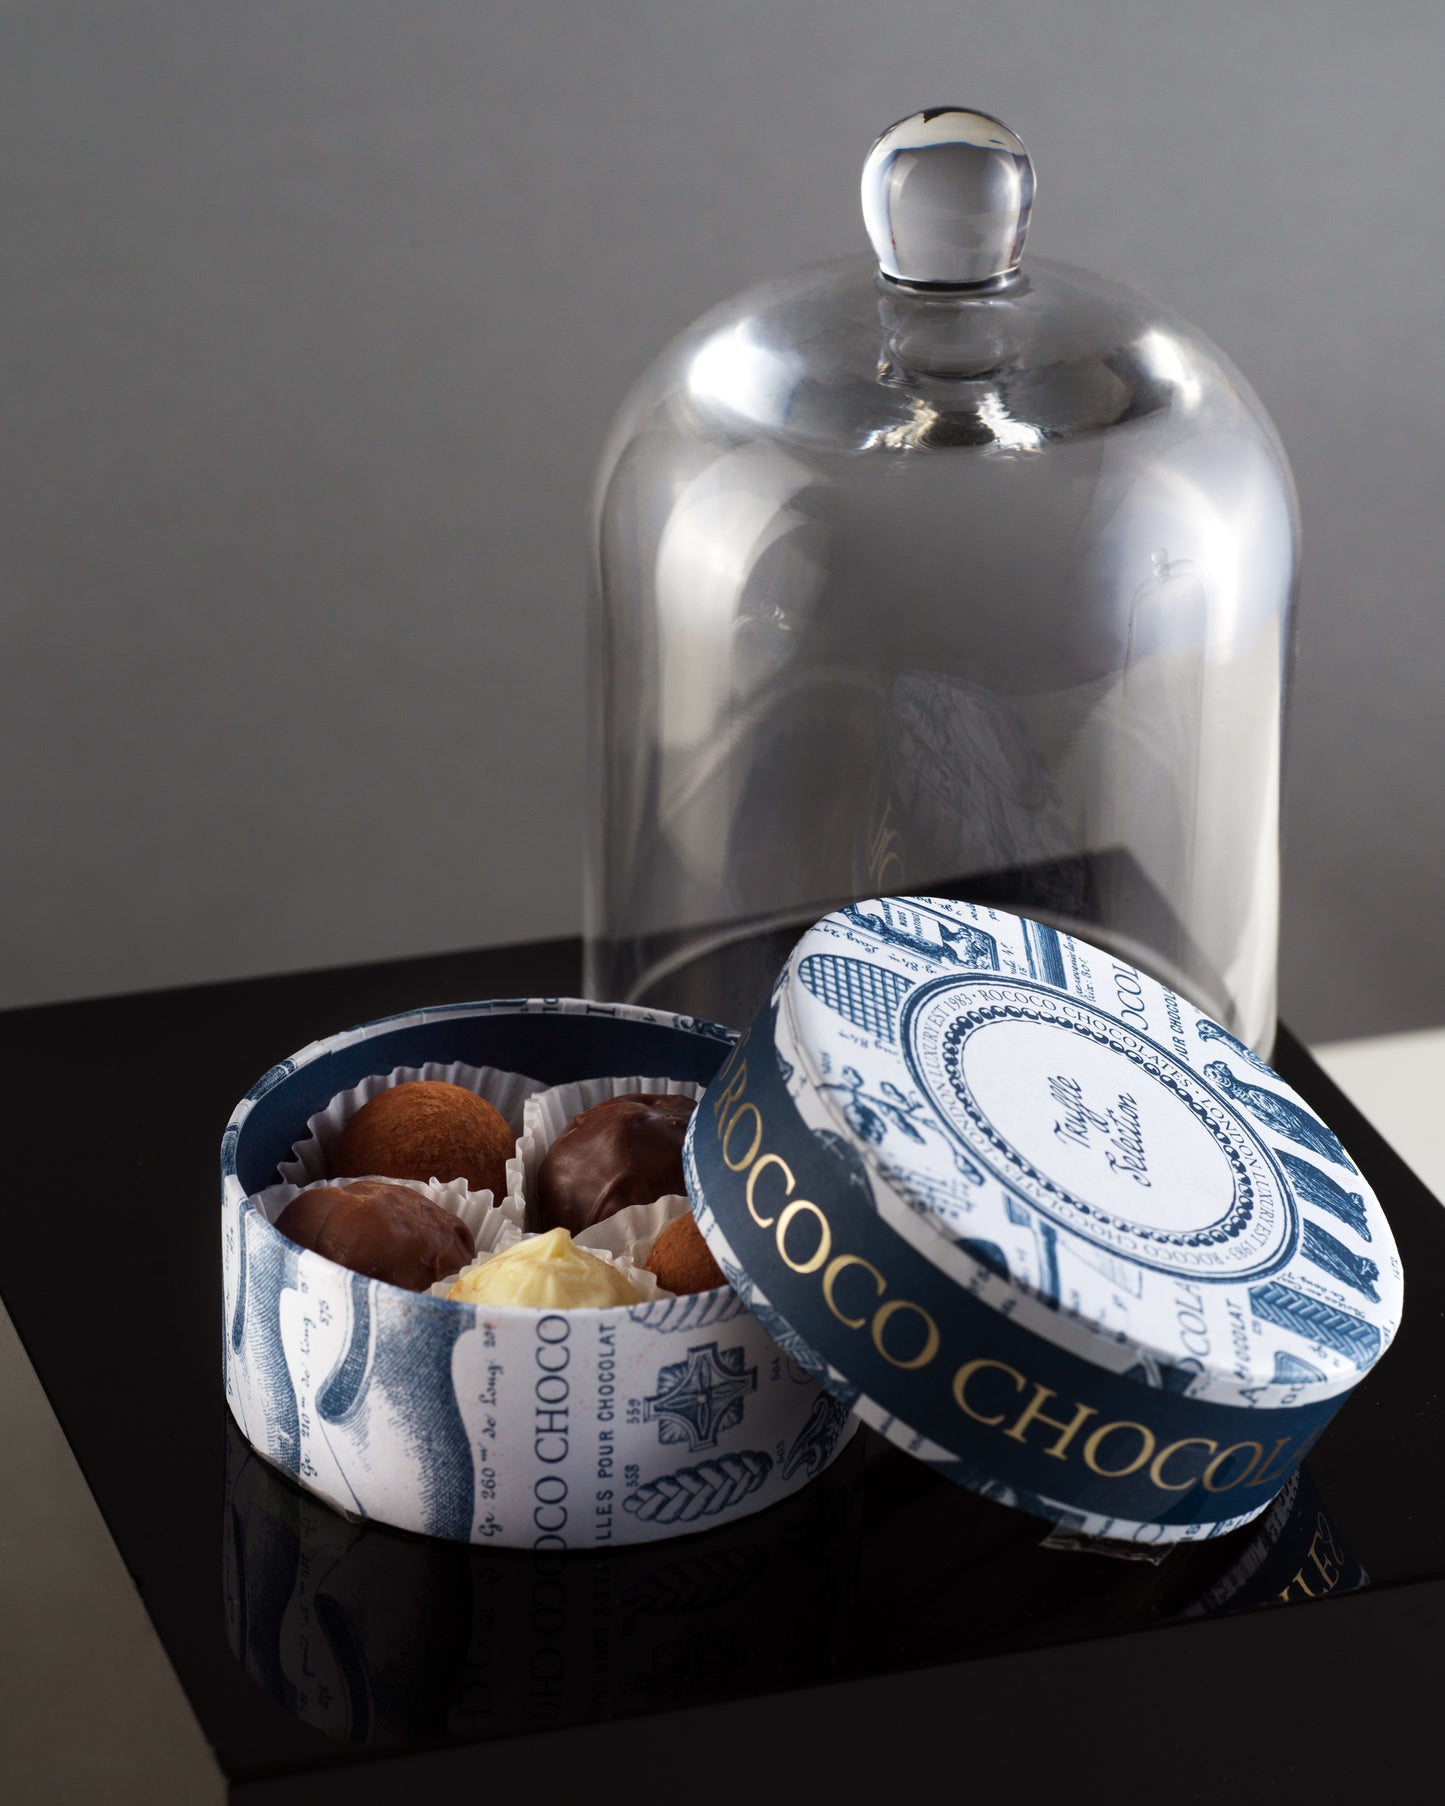 Rococo Mini Truffle Selection and Small Glass Cloche Gift Set